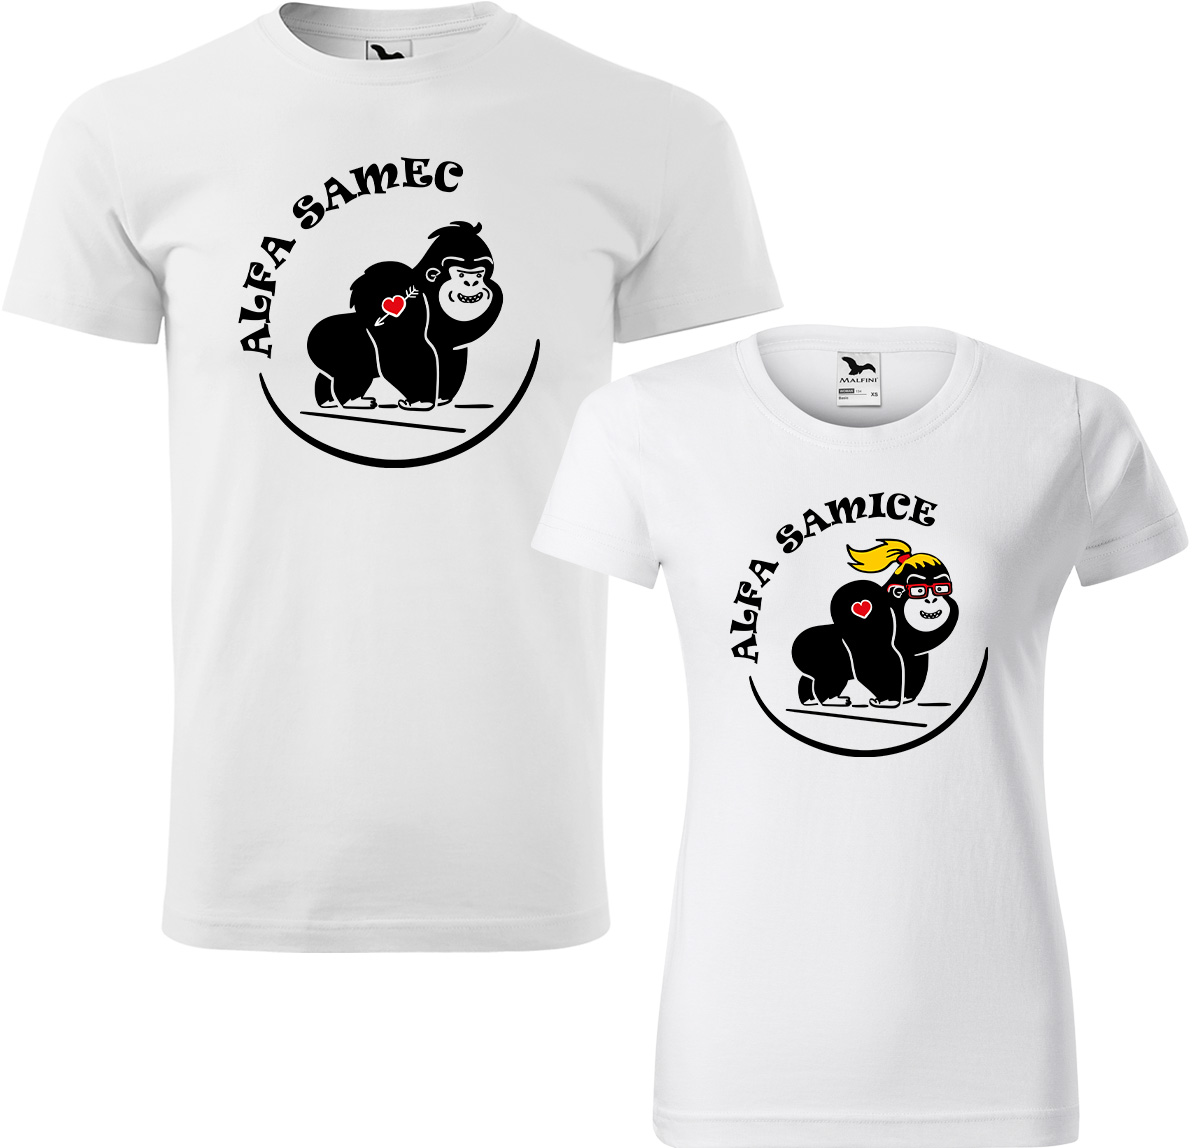 Trička pro páry - Alfa samec a alfa samice Barva: Bílá (00), Velikost dámské tričko: L, Velikost pánské tričko: L